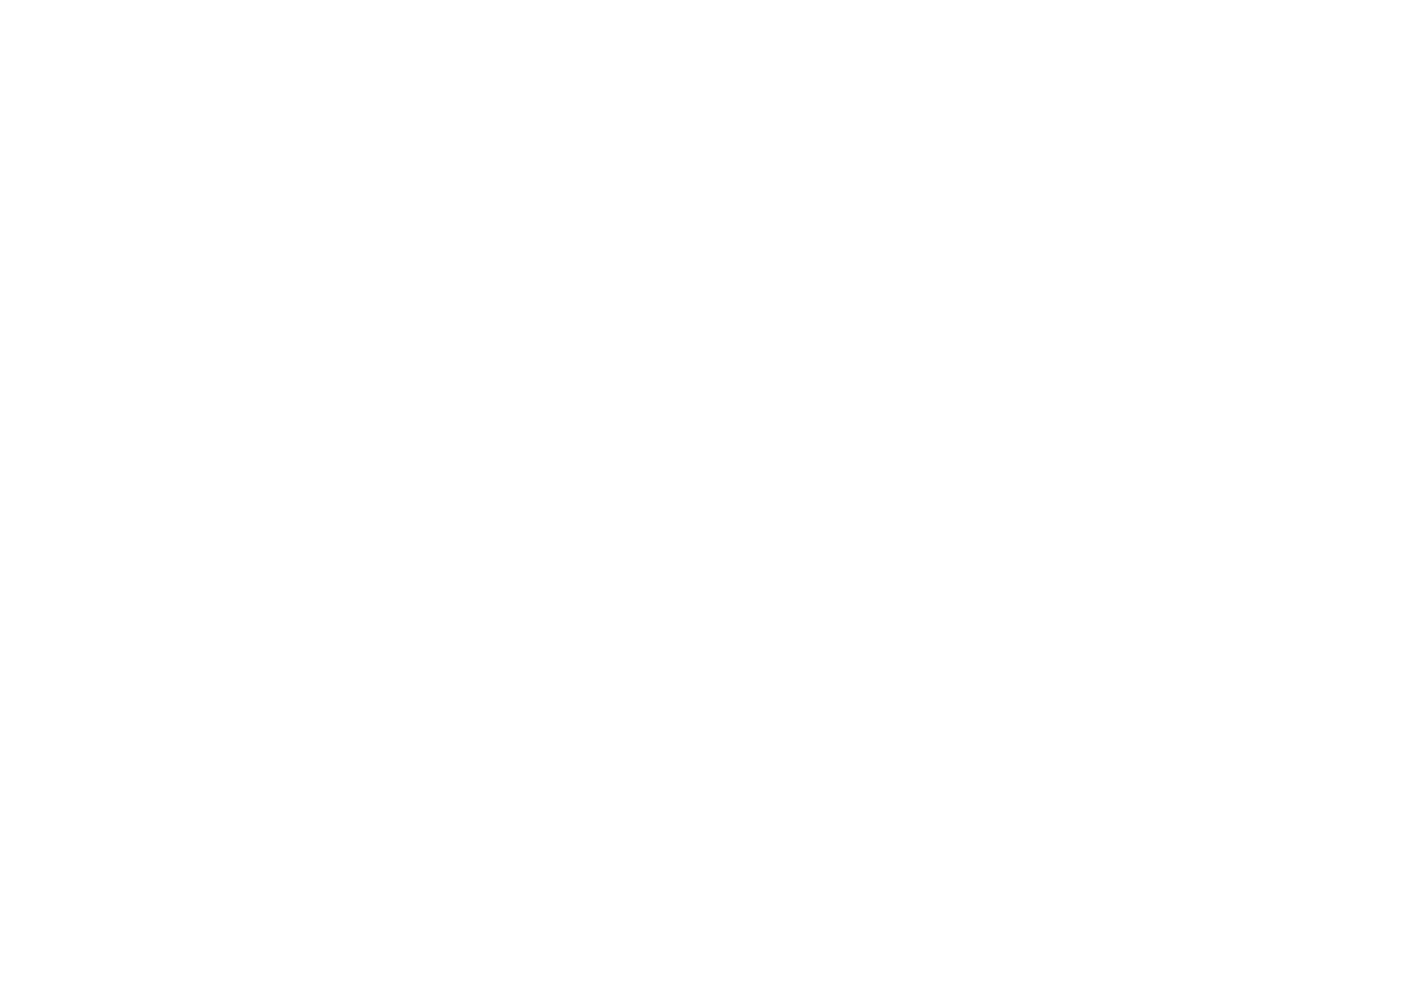 Logotipo del Ejército australiano en blanco